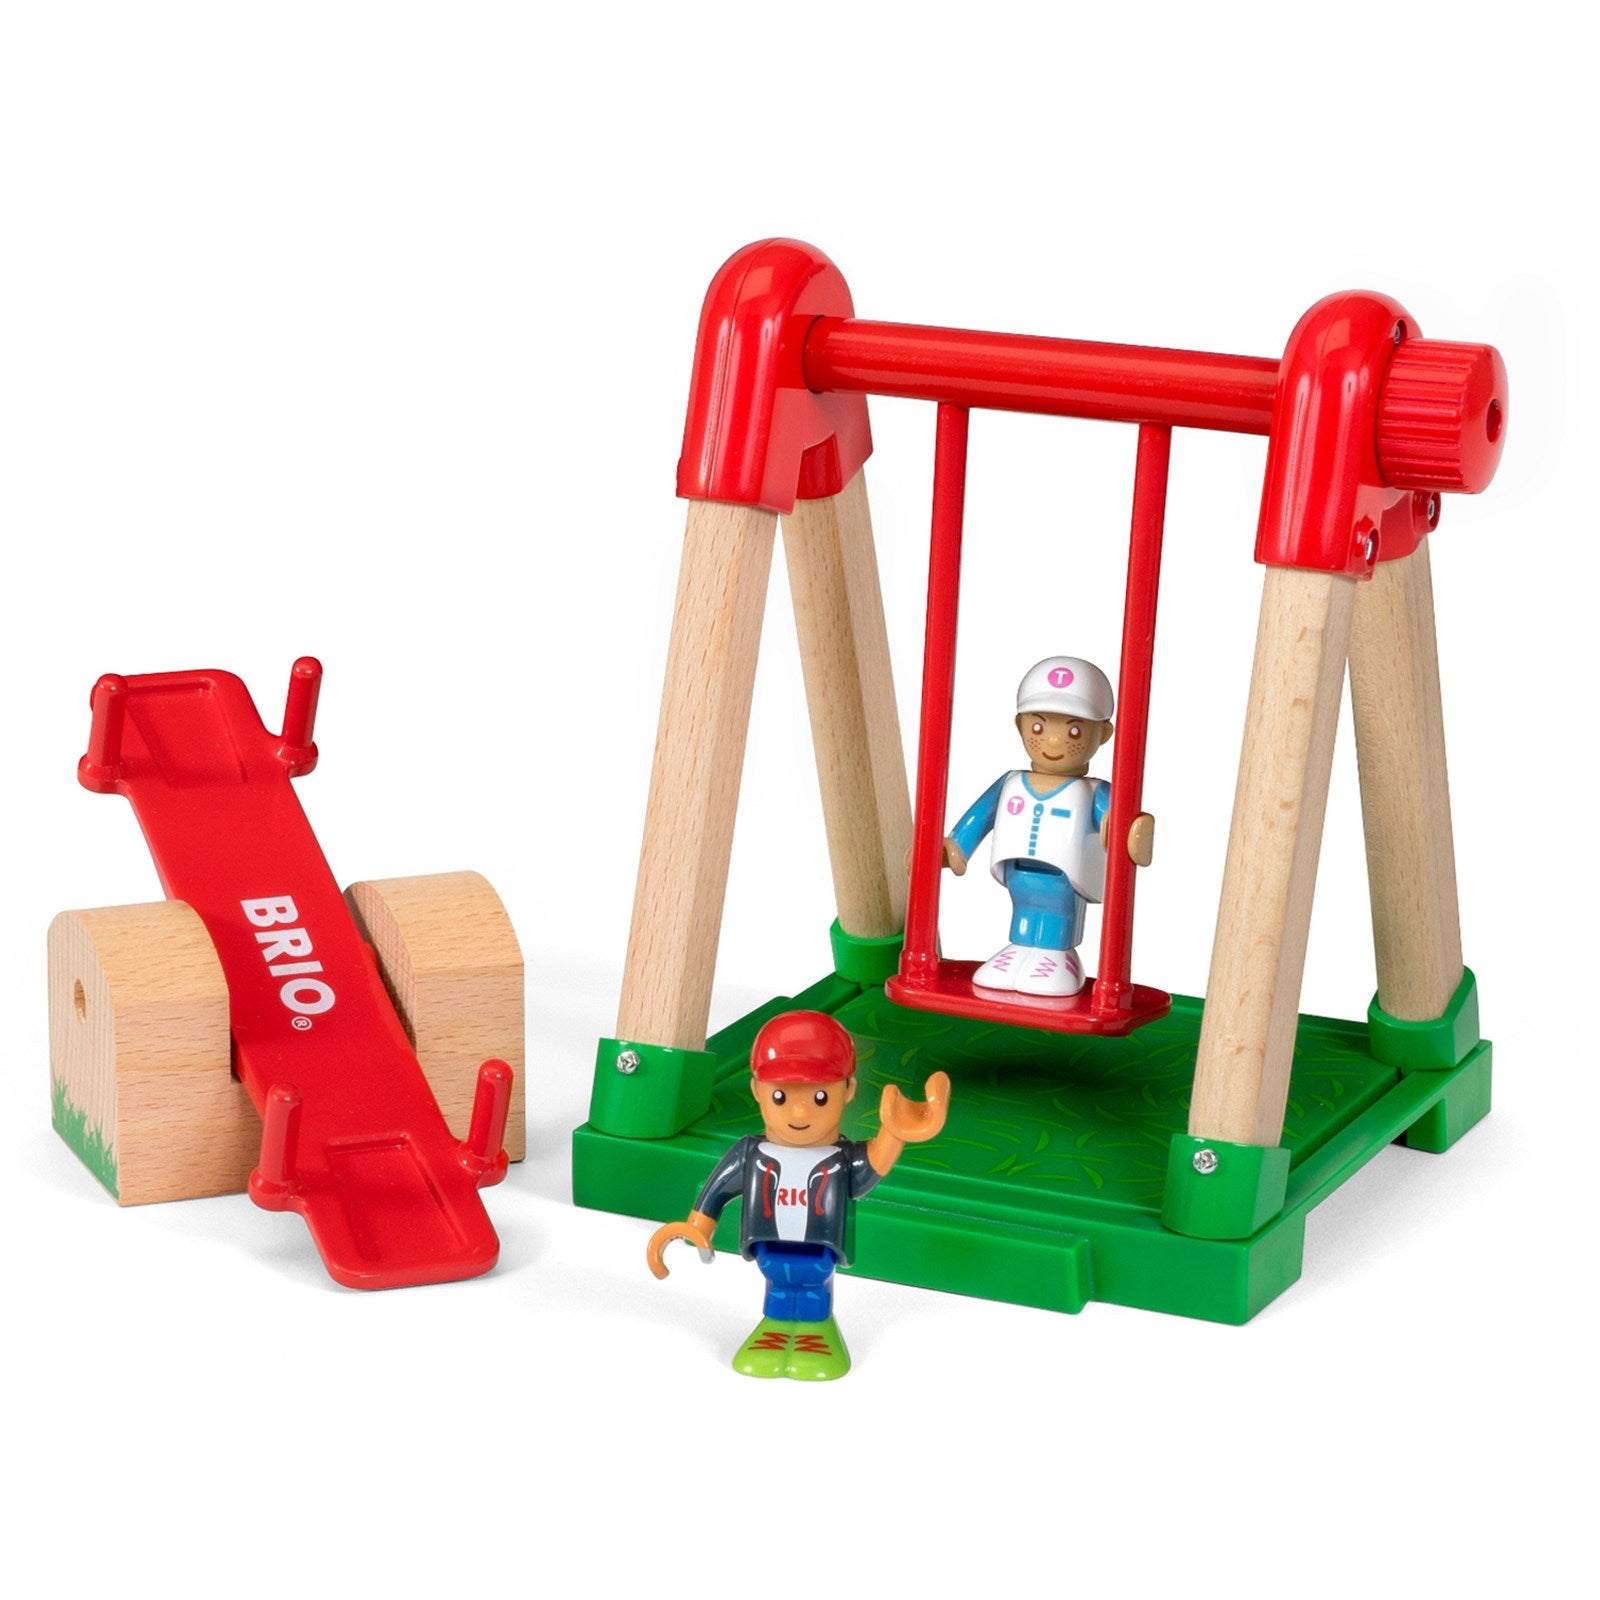 BRIO Village Playground - 33948 / Premium High Quality Toddler